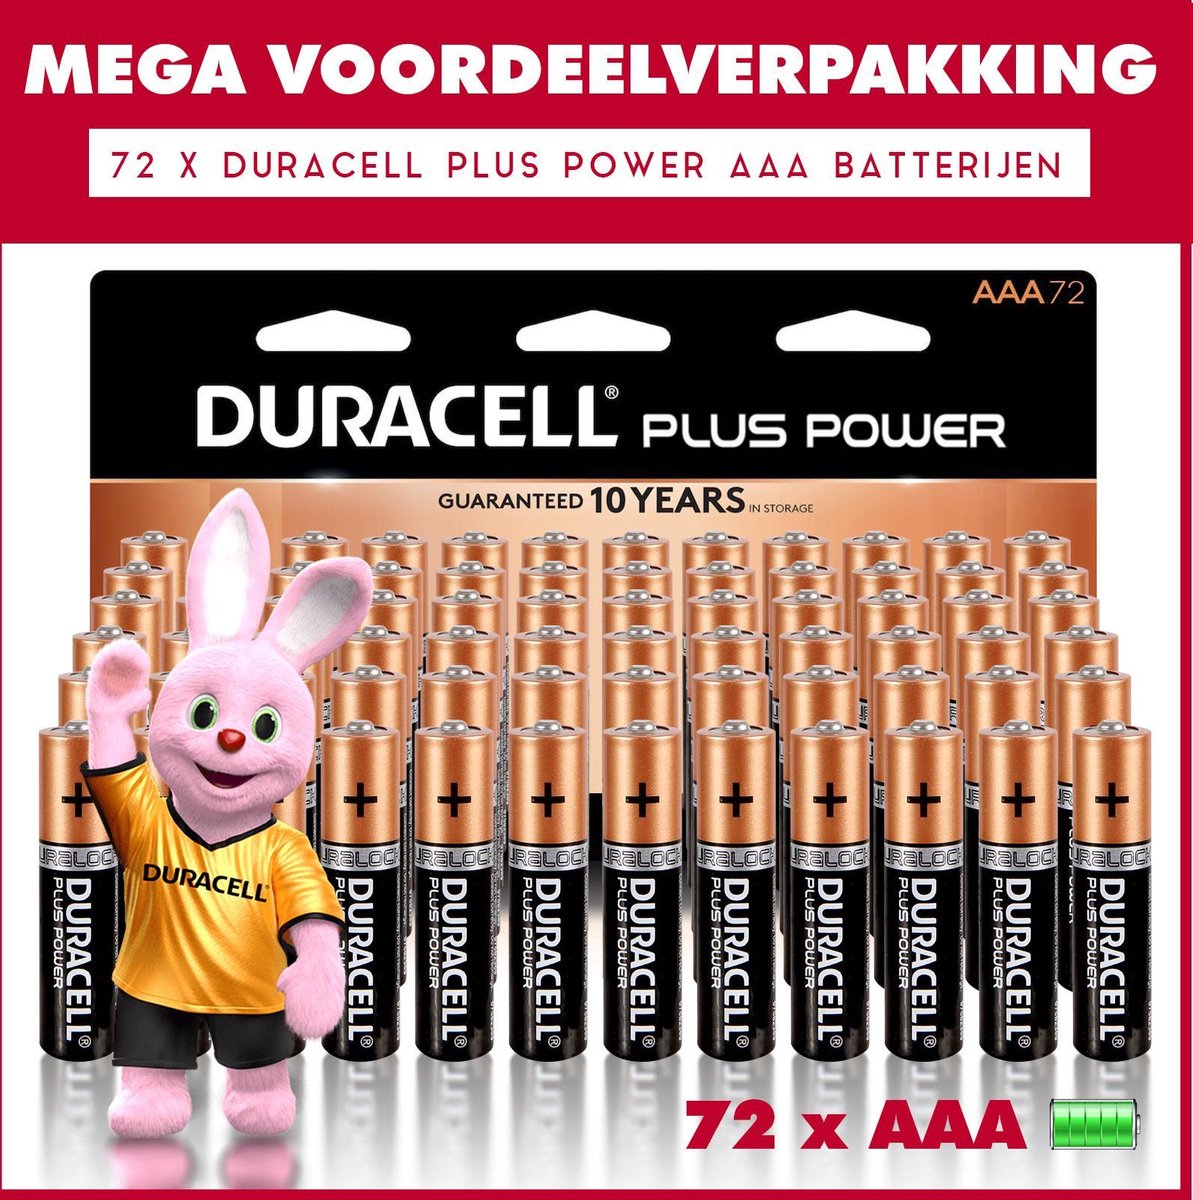 72 x Duracell AAA Plus Power - Voordeelverpakking - 72 x AAA batterijen